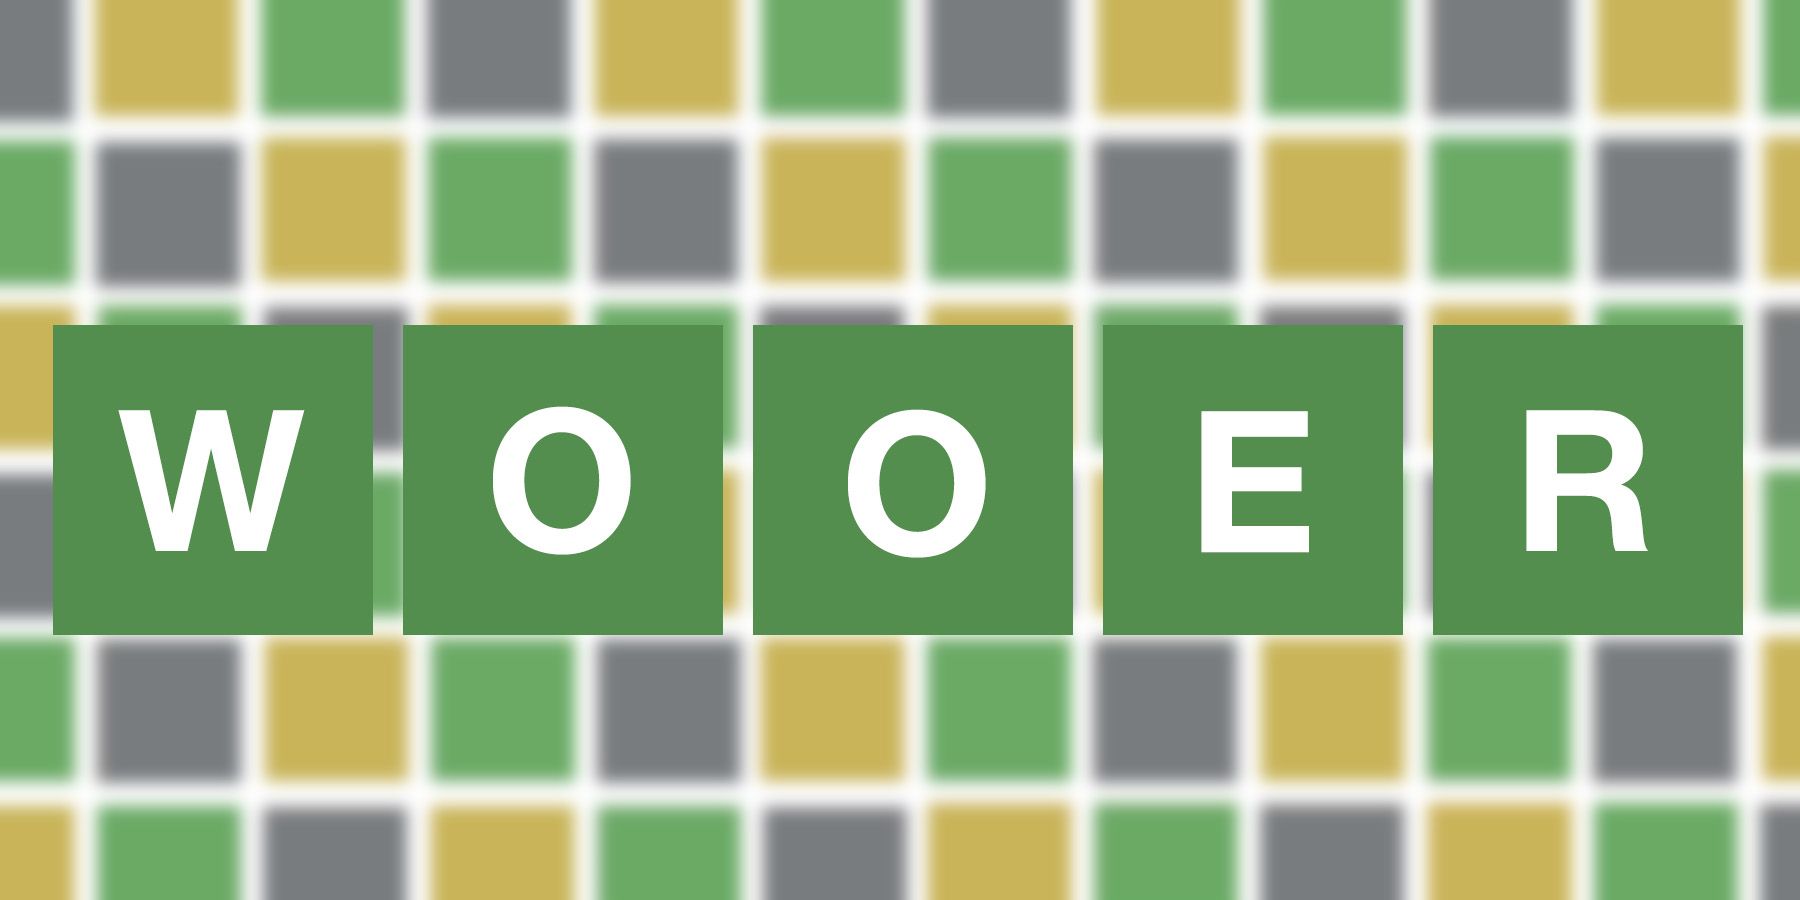 WOOER (Wordle #78 - September 5, 2021)